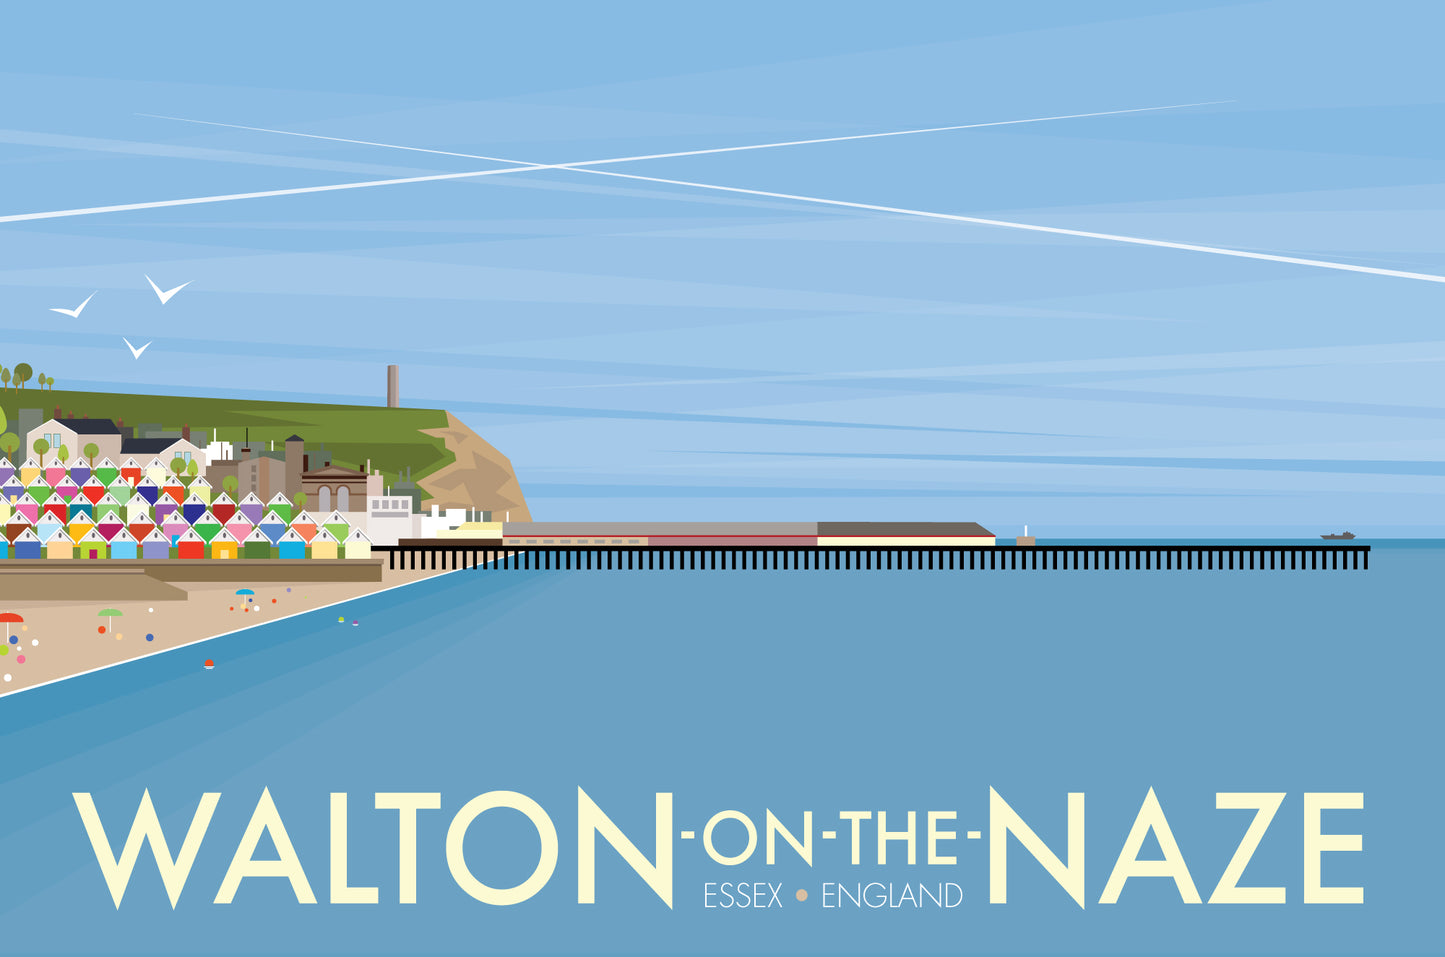 Walton-on-the-Naze Travel Poster